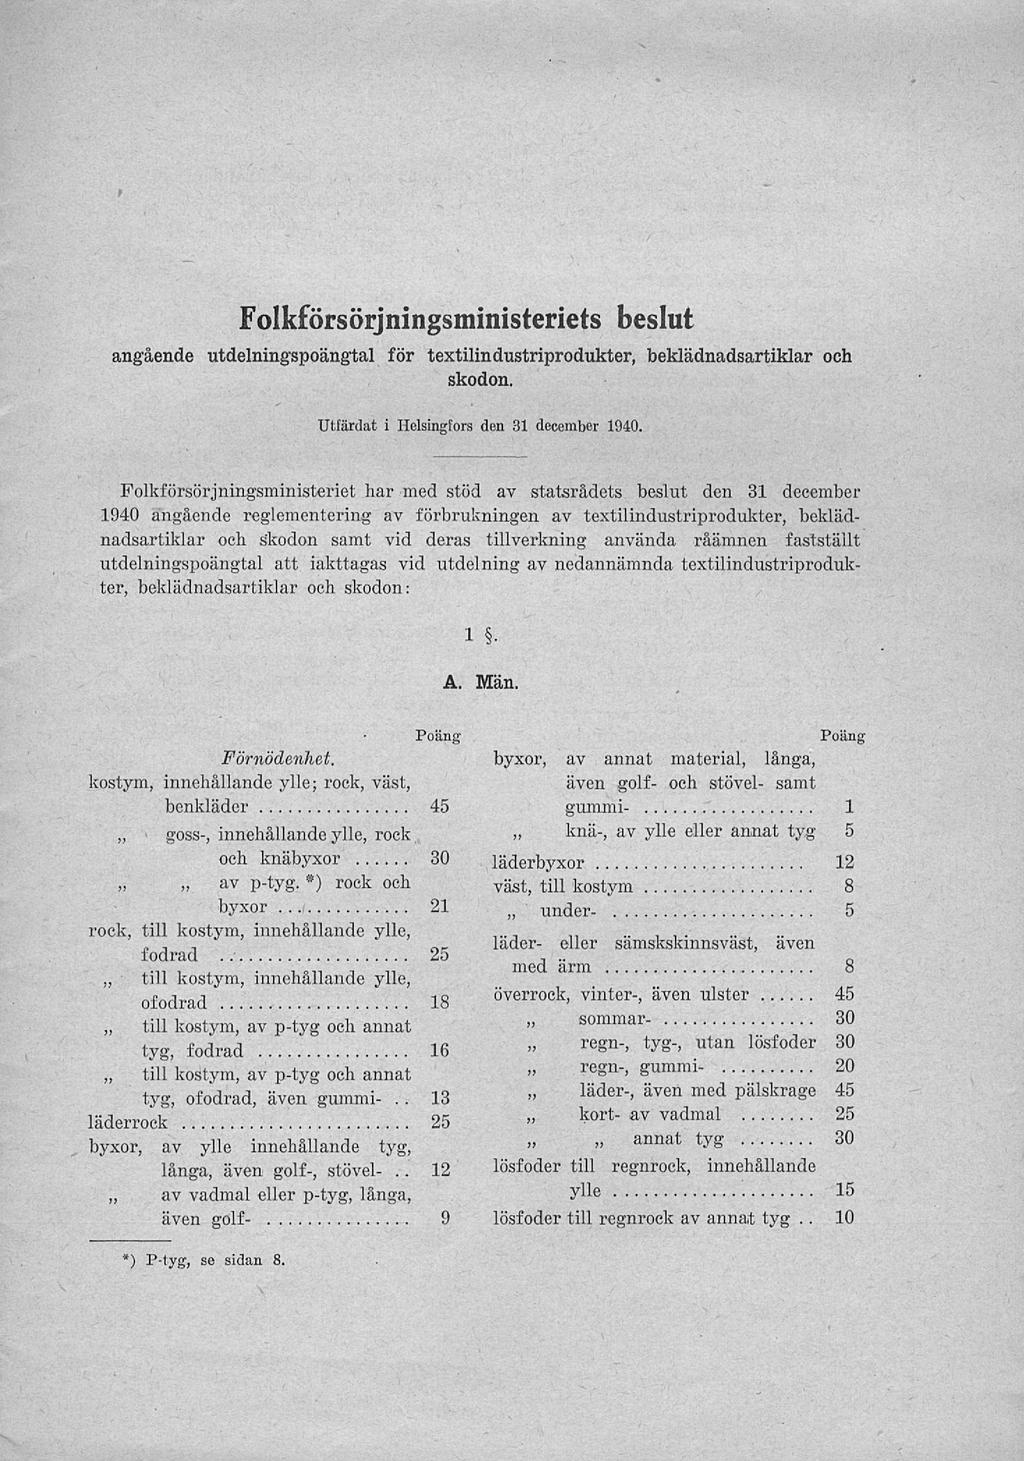 f Folkförsörjningsministeriets beslut angående utdelningspoängtalför textilindustriprodukter, beklädnadsartiklar och skodon. Utfärdat i Helsingfors den 31 december 1940.